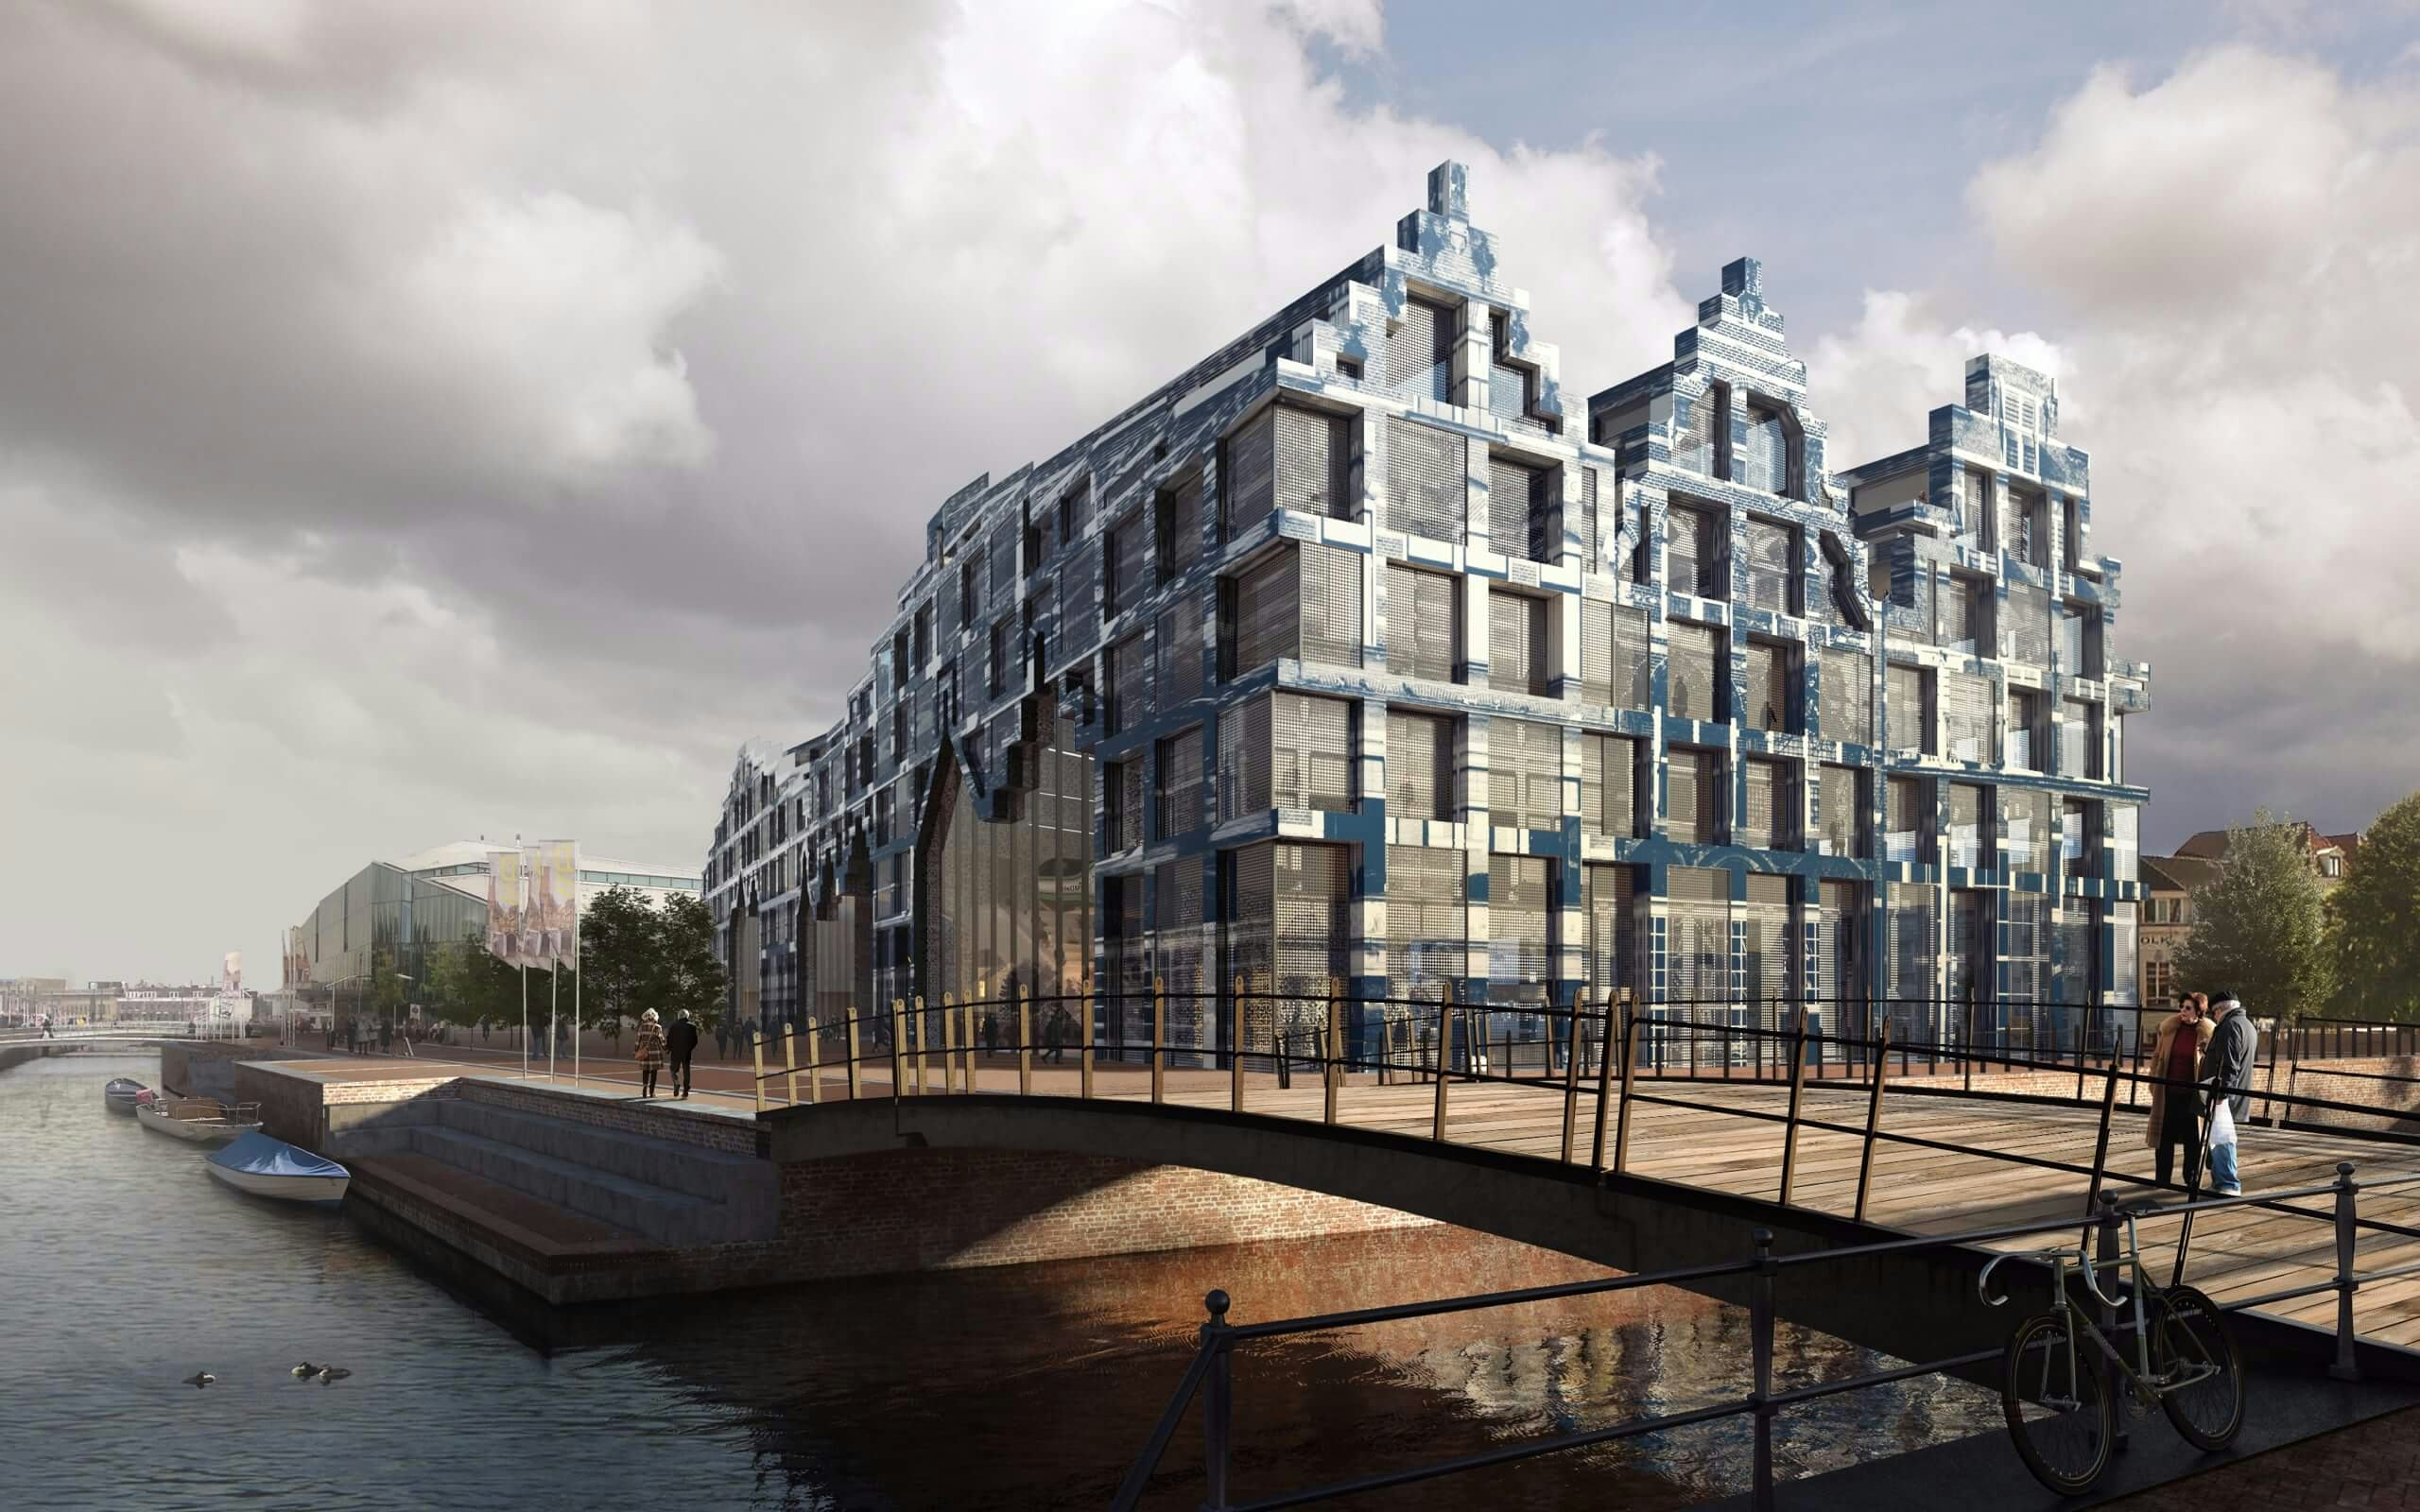 House of Delft als ode aan de pioniers van de stad